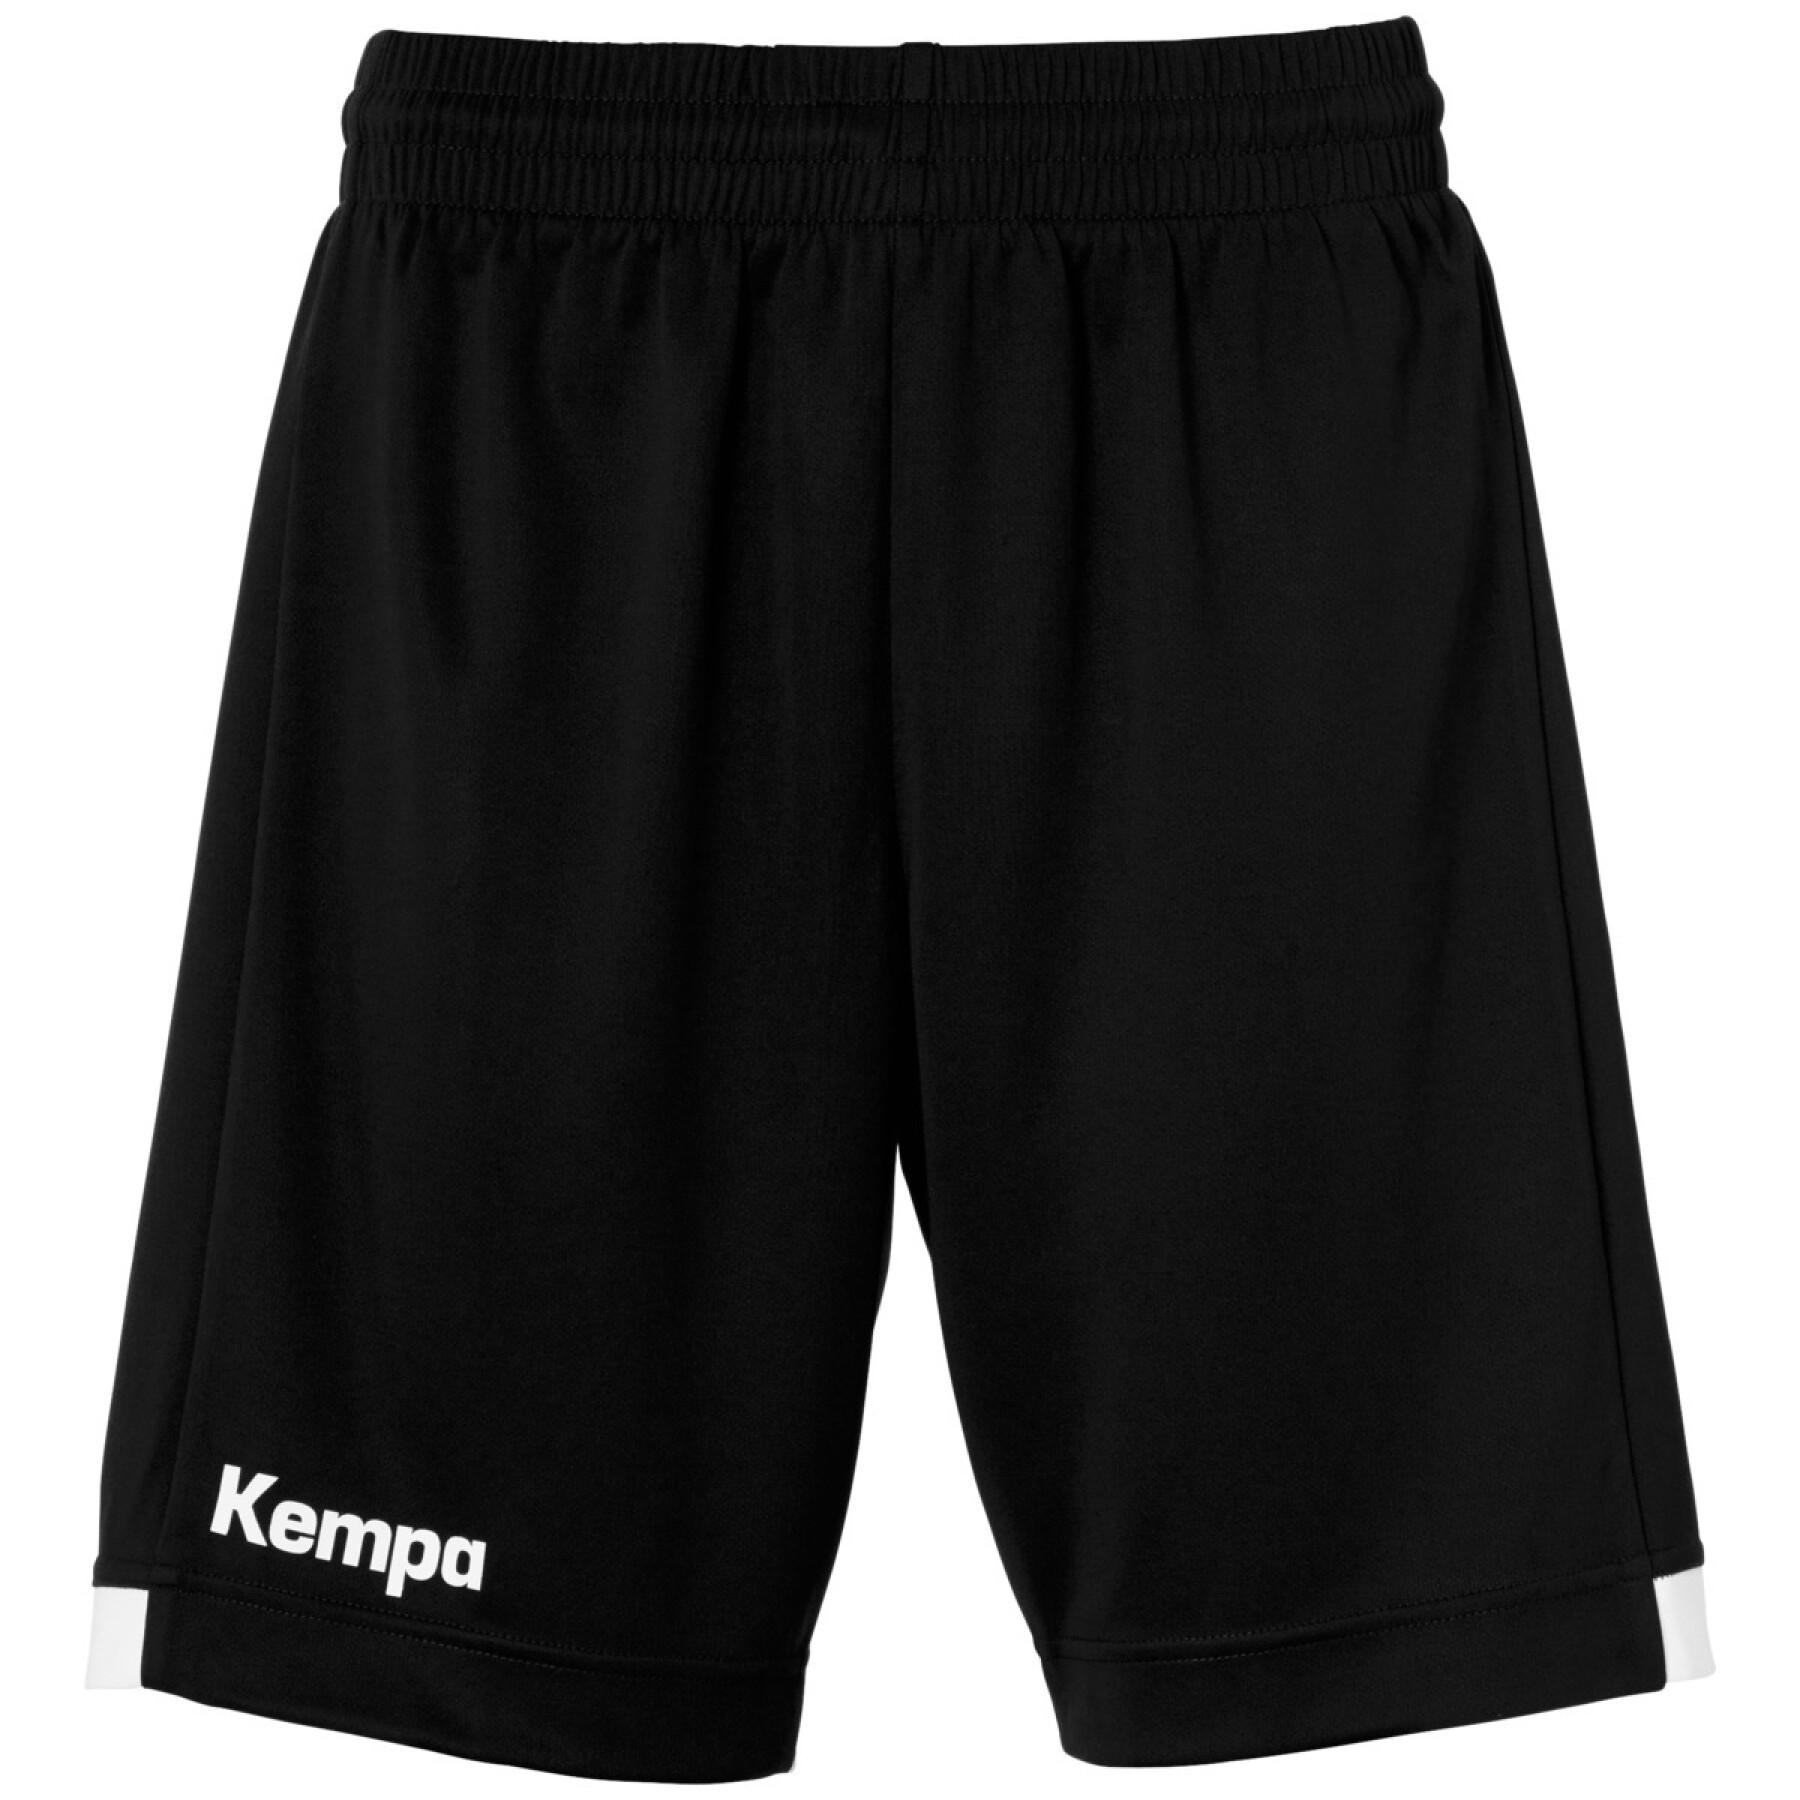 Women's long shorts Kempa Player